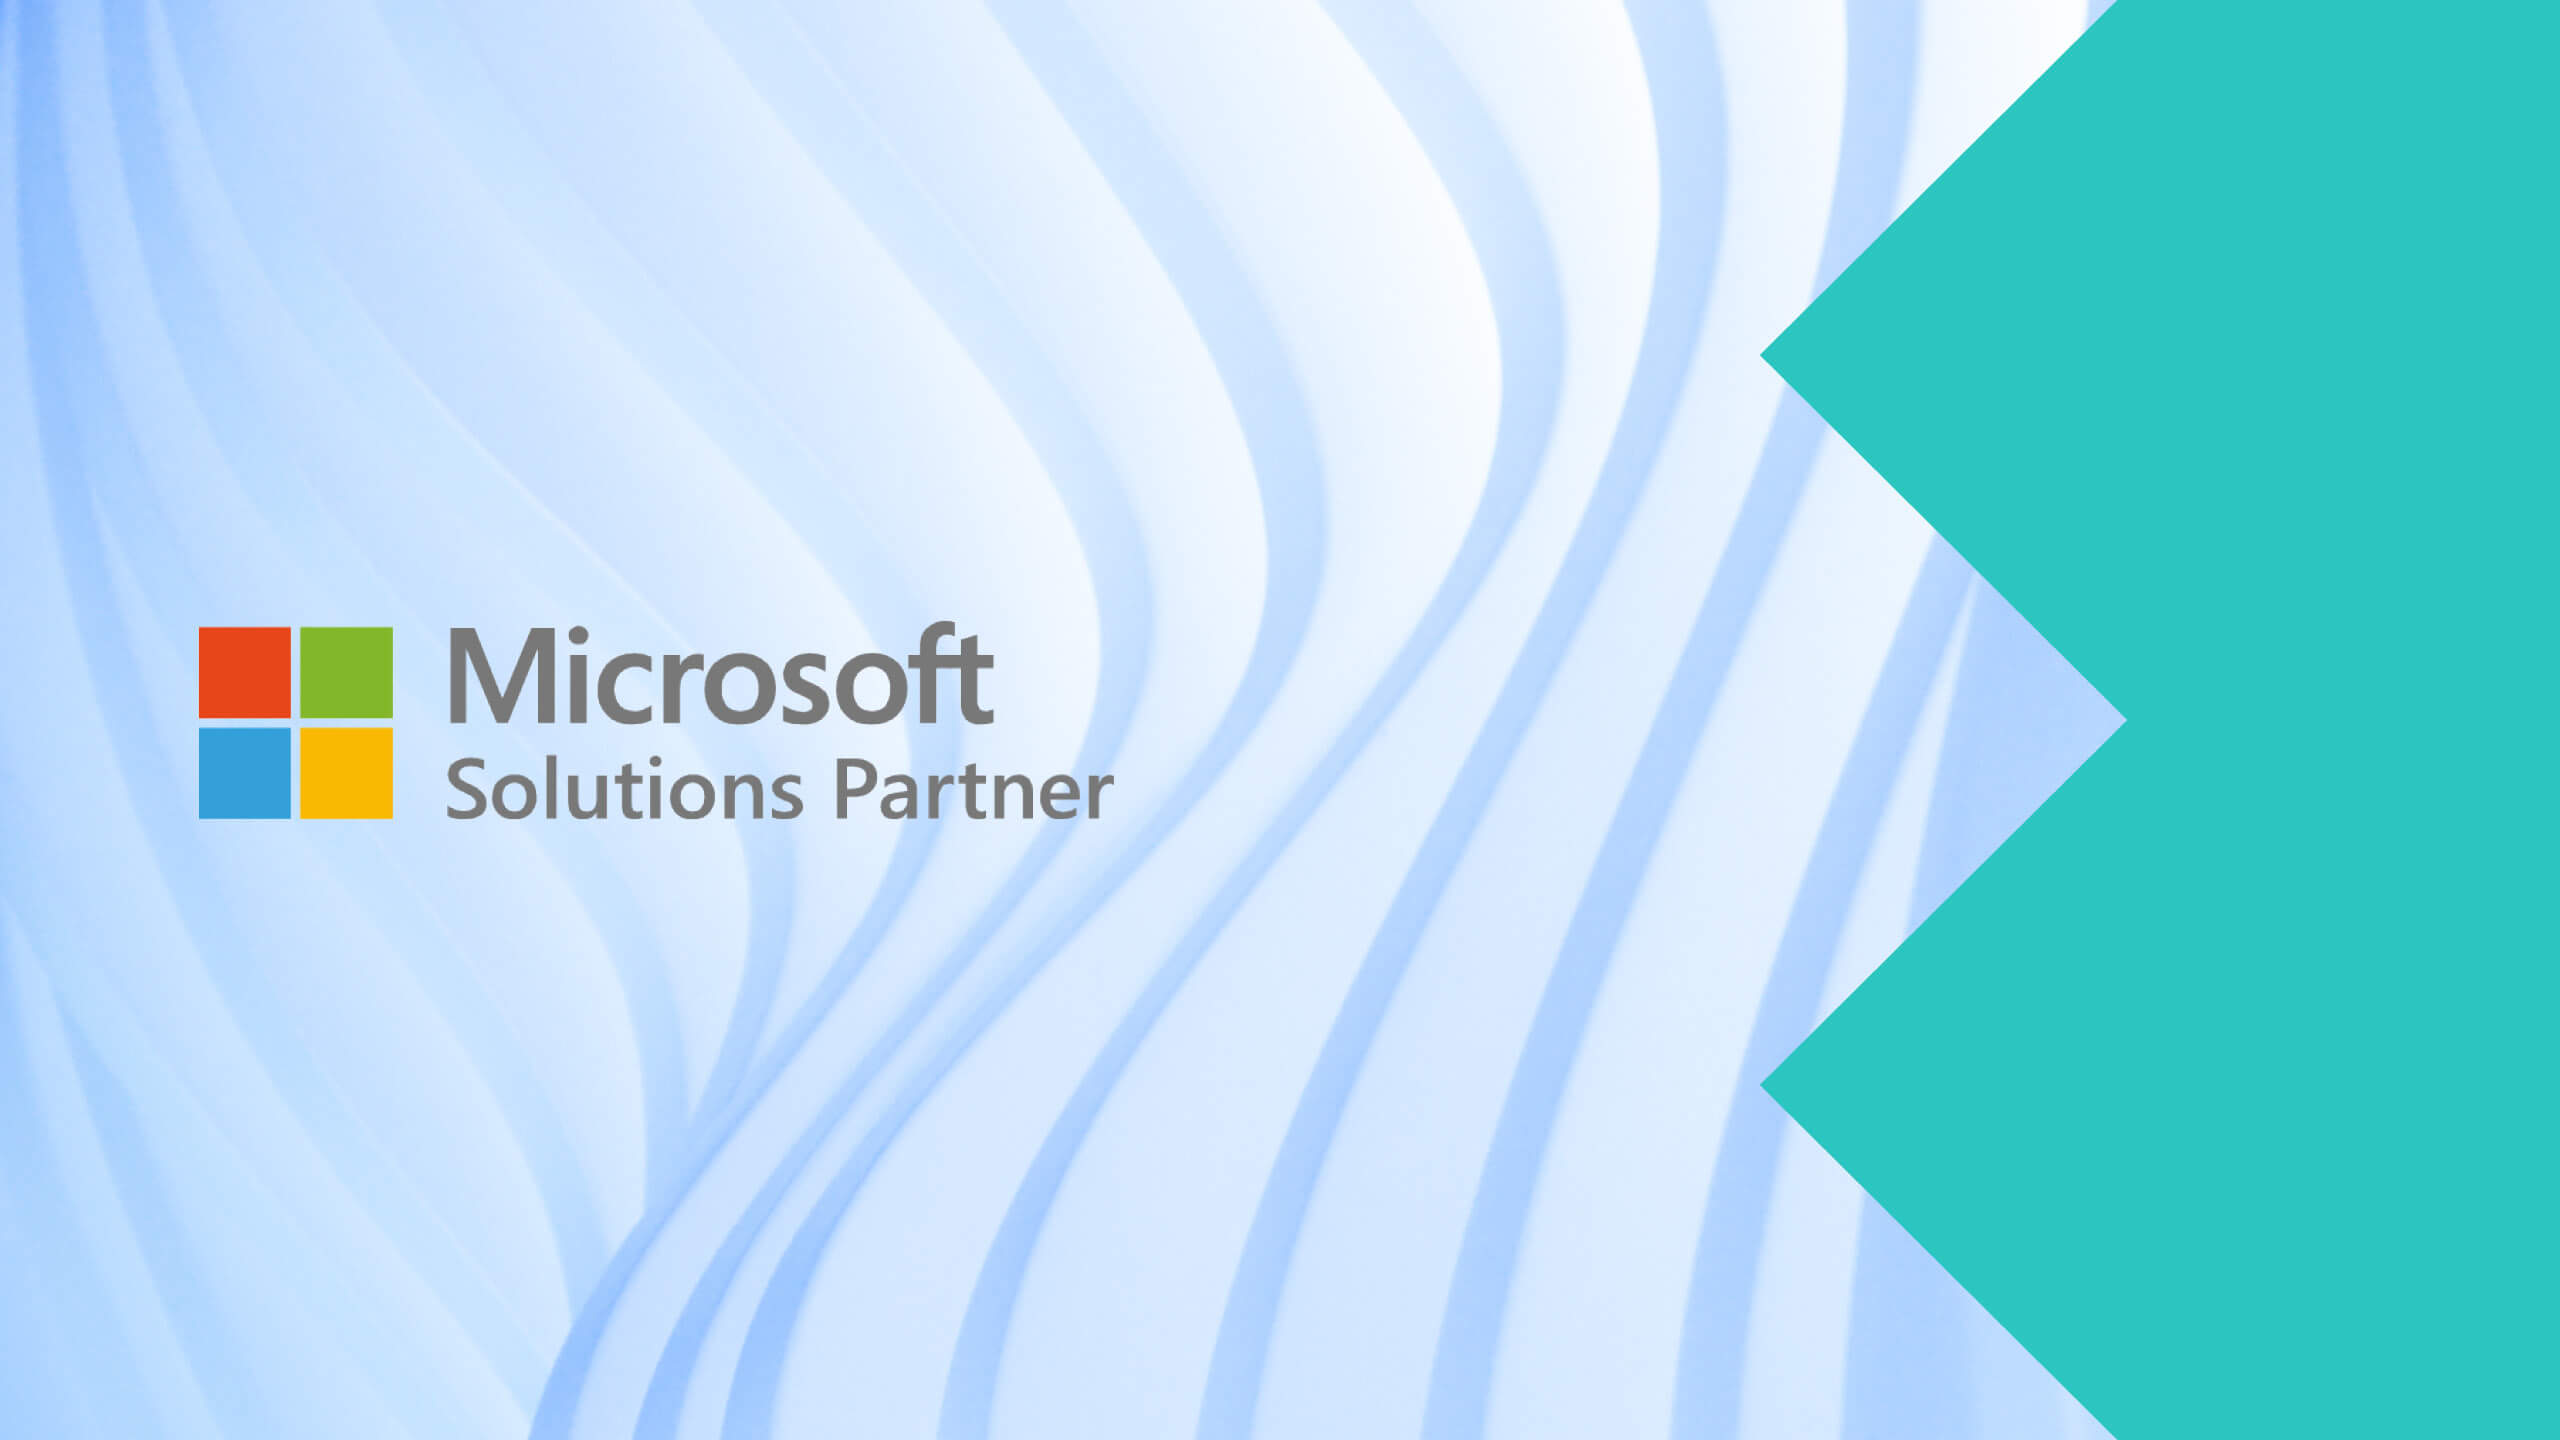 Choosing Right Microsoft Partner: DataArt's Microsoft Solutions Partner Designations